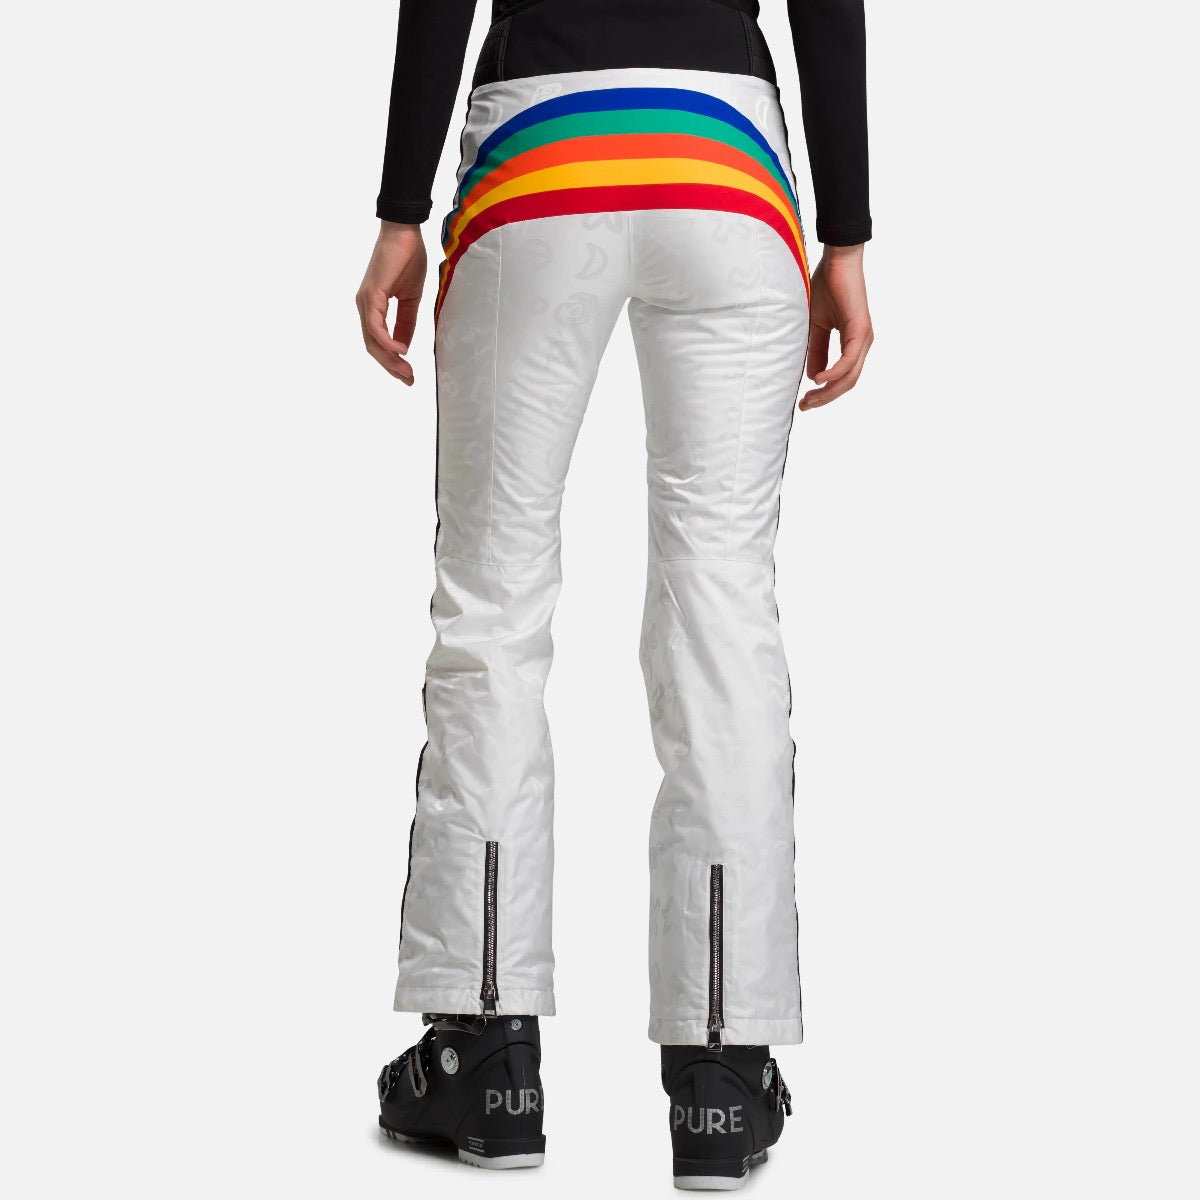 Rossignol X JCC Womens Rainbow Ski Pants